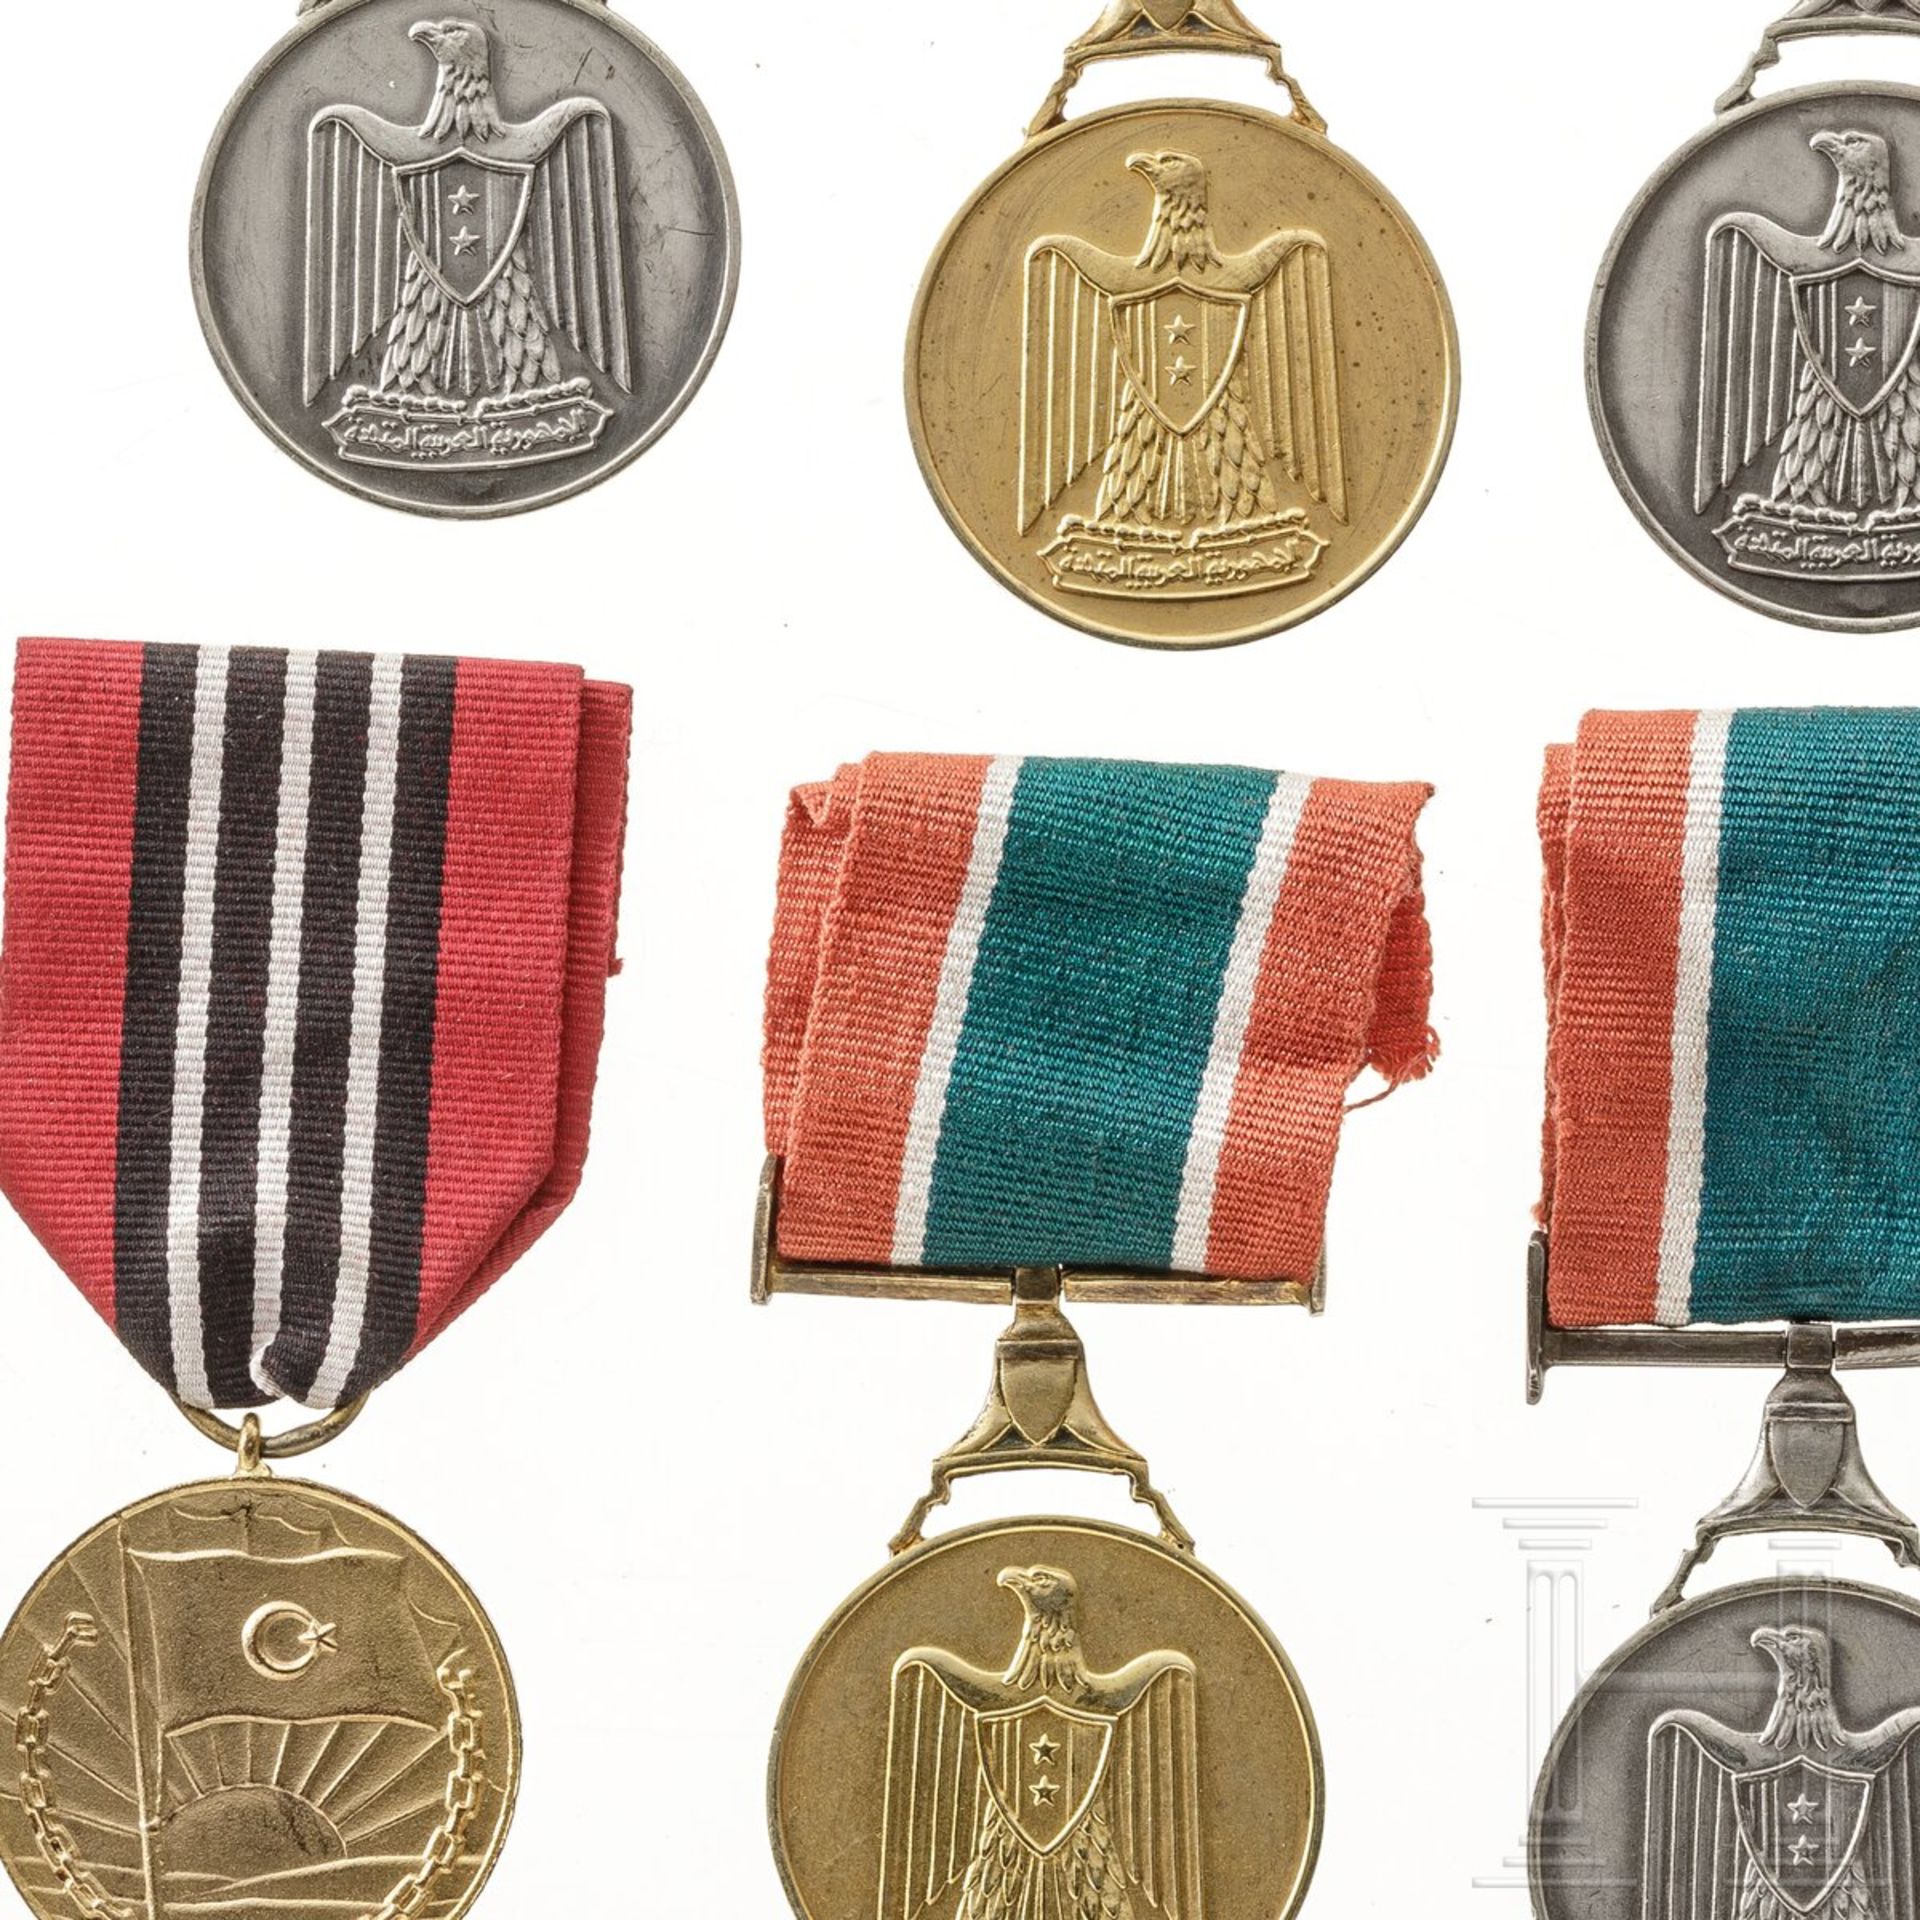 Königreich Libyen - acht Medaillen - Image 3 of 3